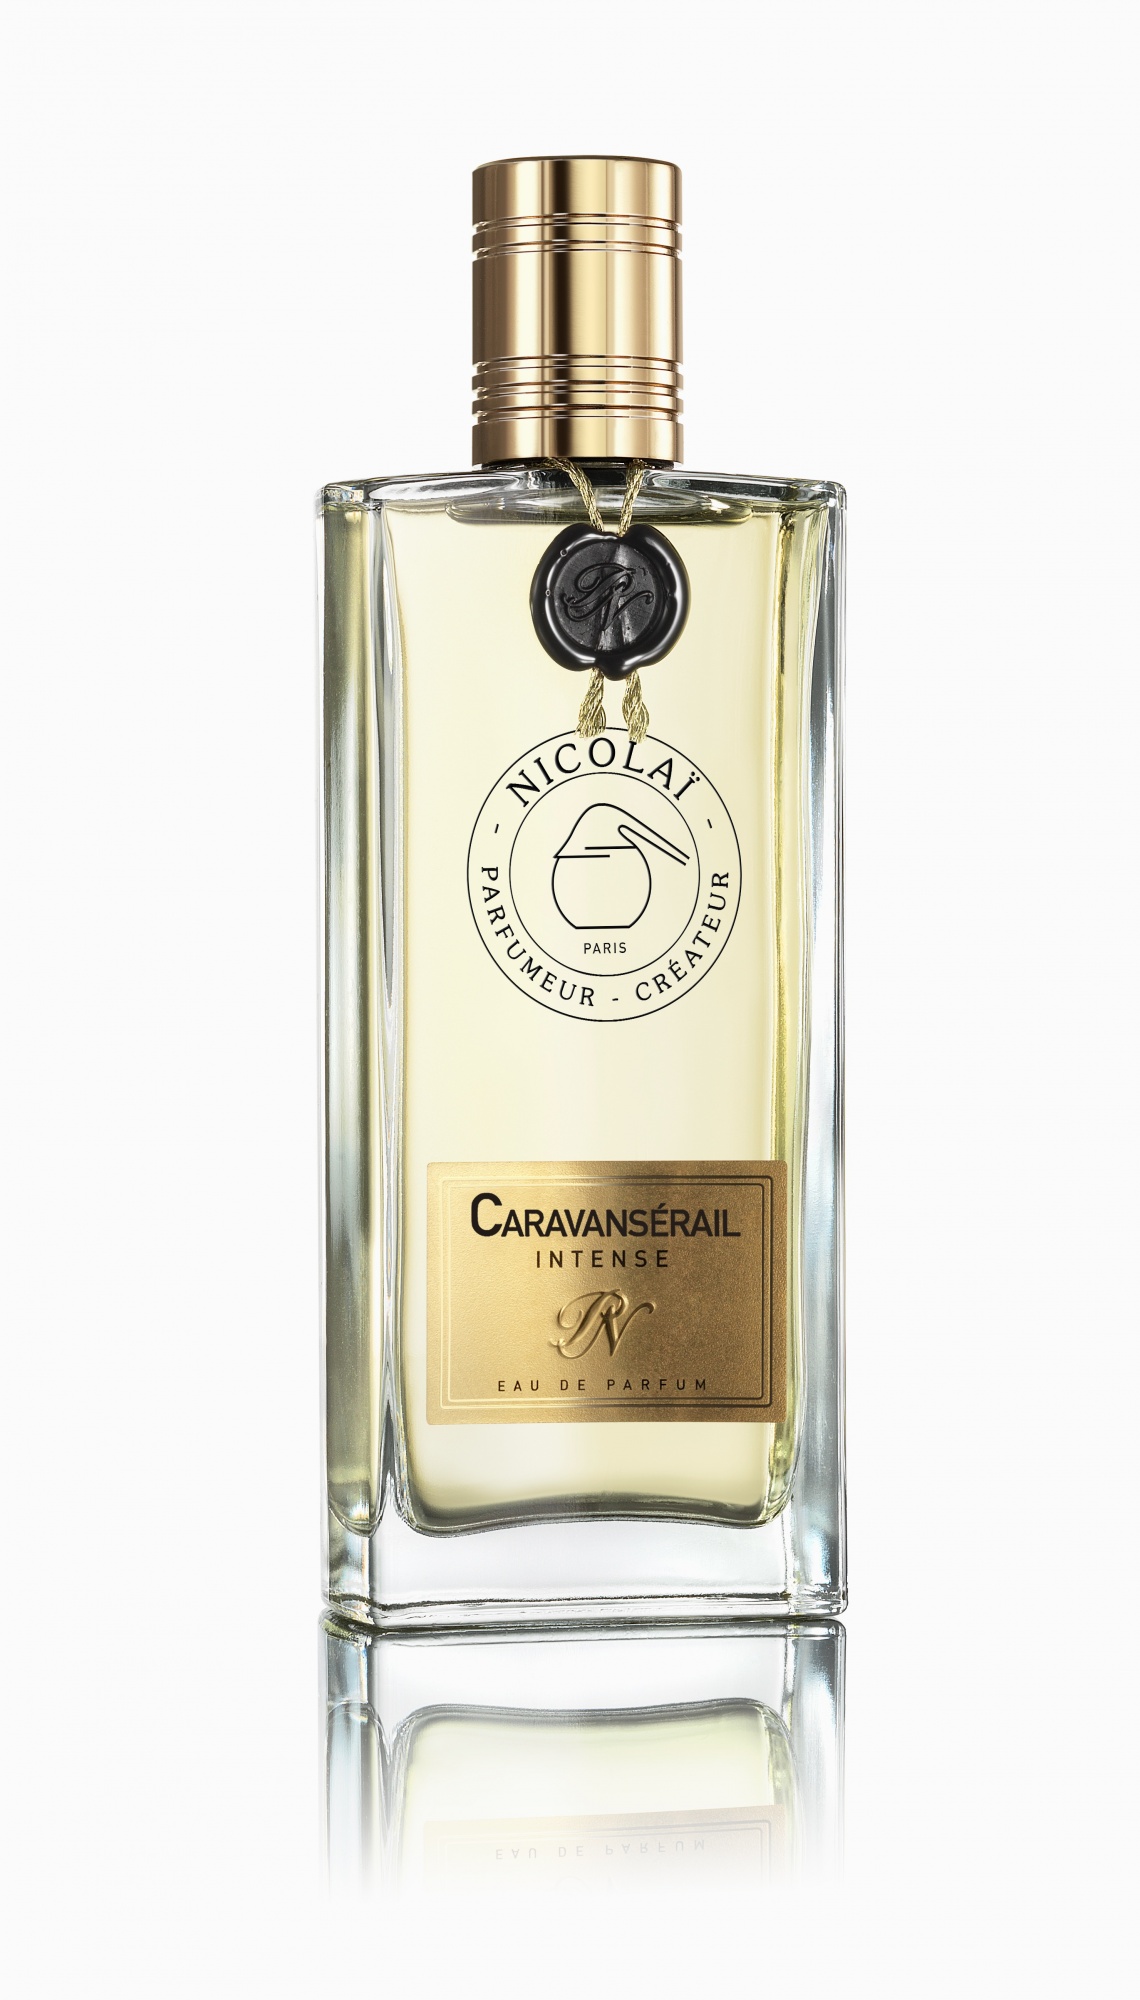 Eau de parfum Intense Caravanserail (100 ml)